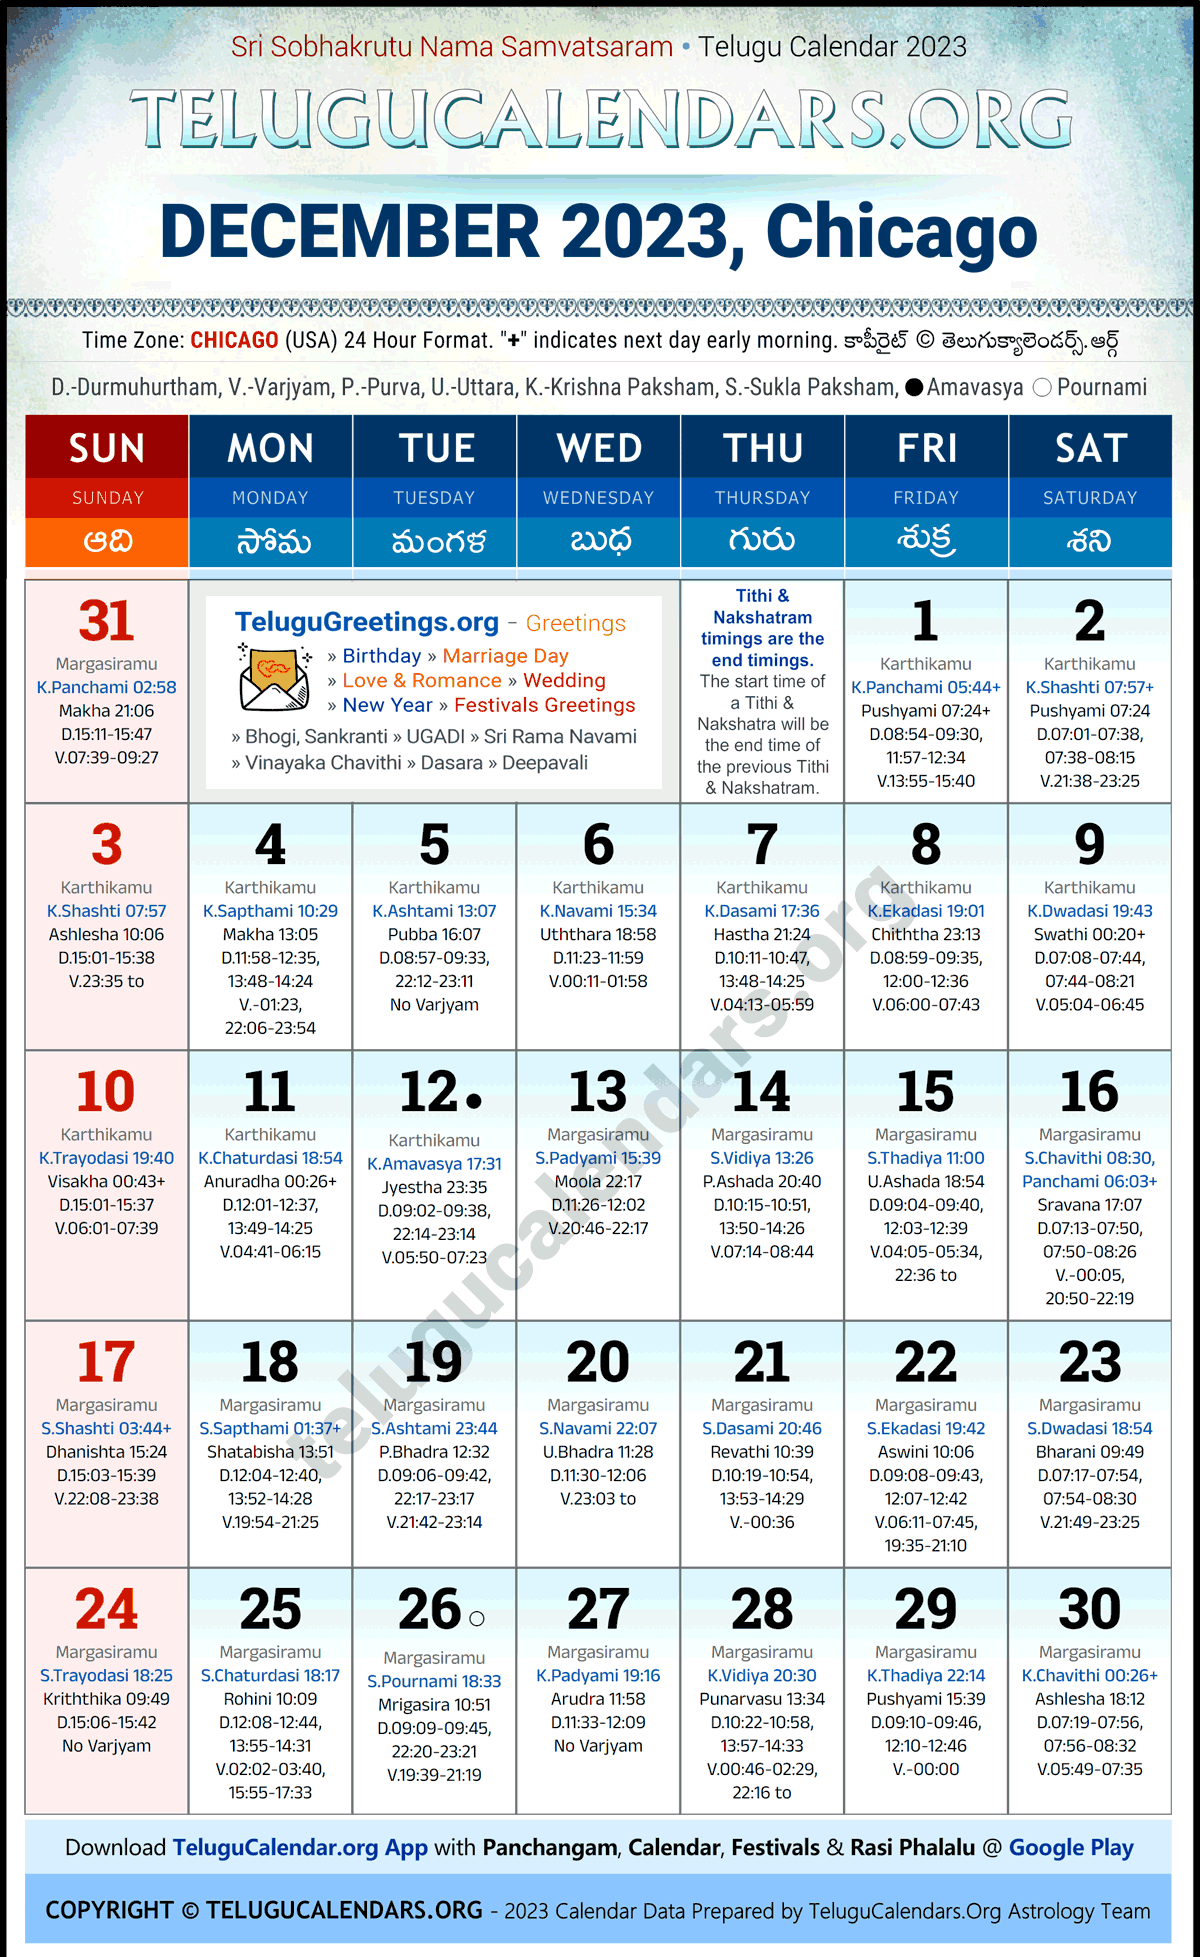 Telugu Calendar 2023 December Festivals for Chicago